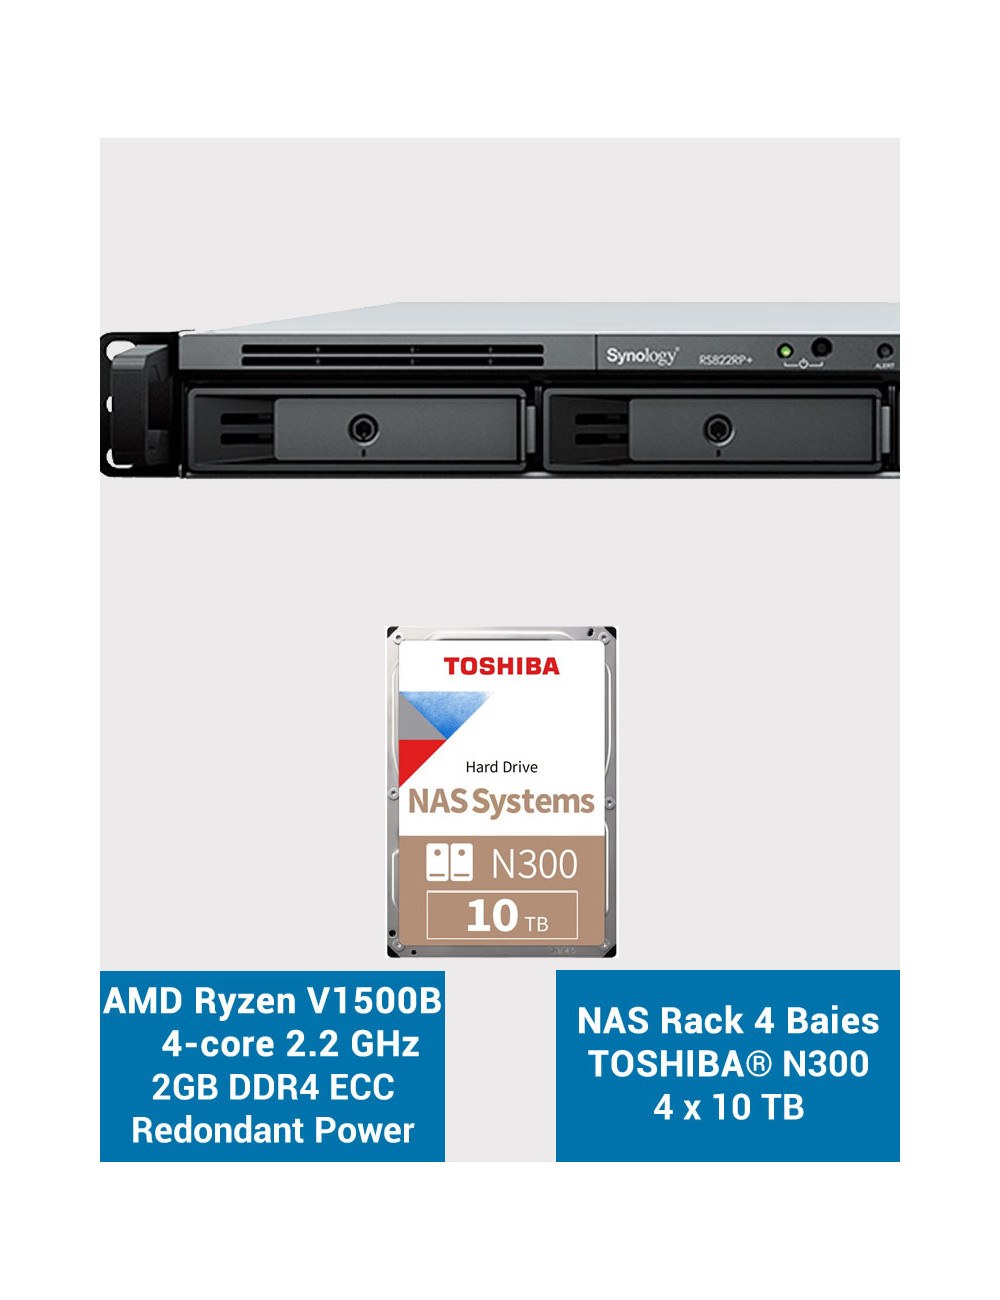 Synology RS822RP+ 2GB NAS Server Rack 1U Toshiba N300 40TB (4x10TB)